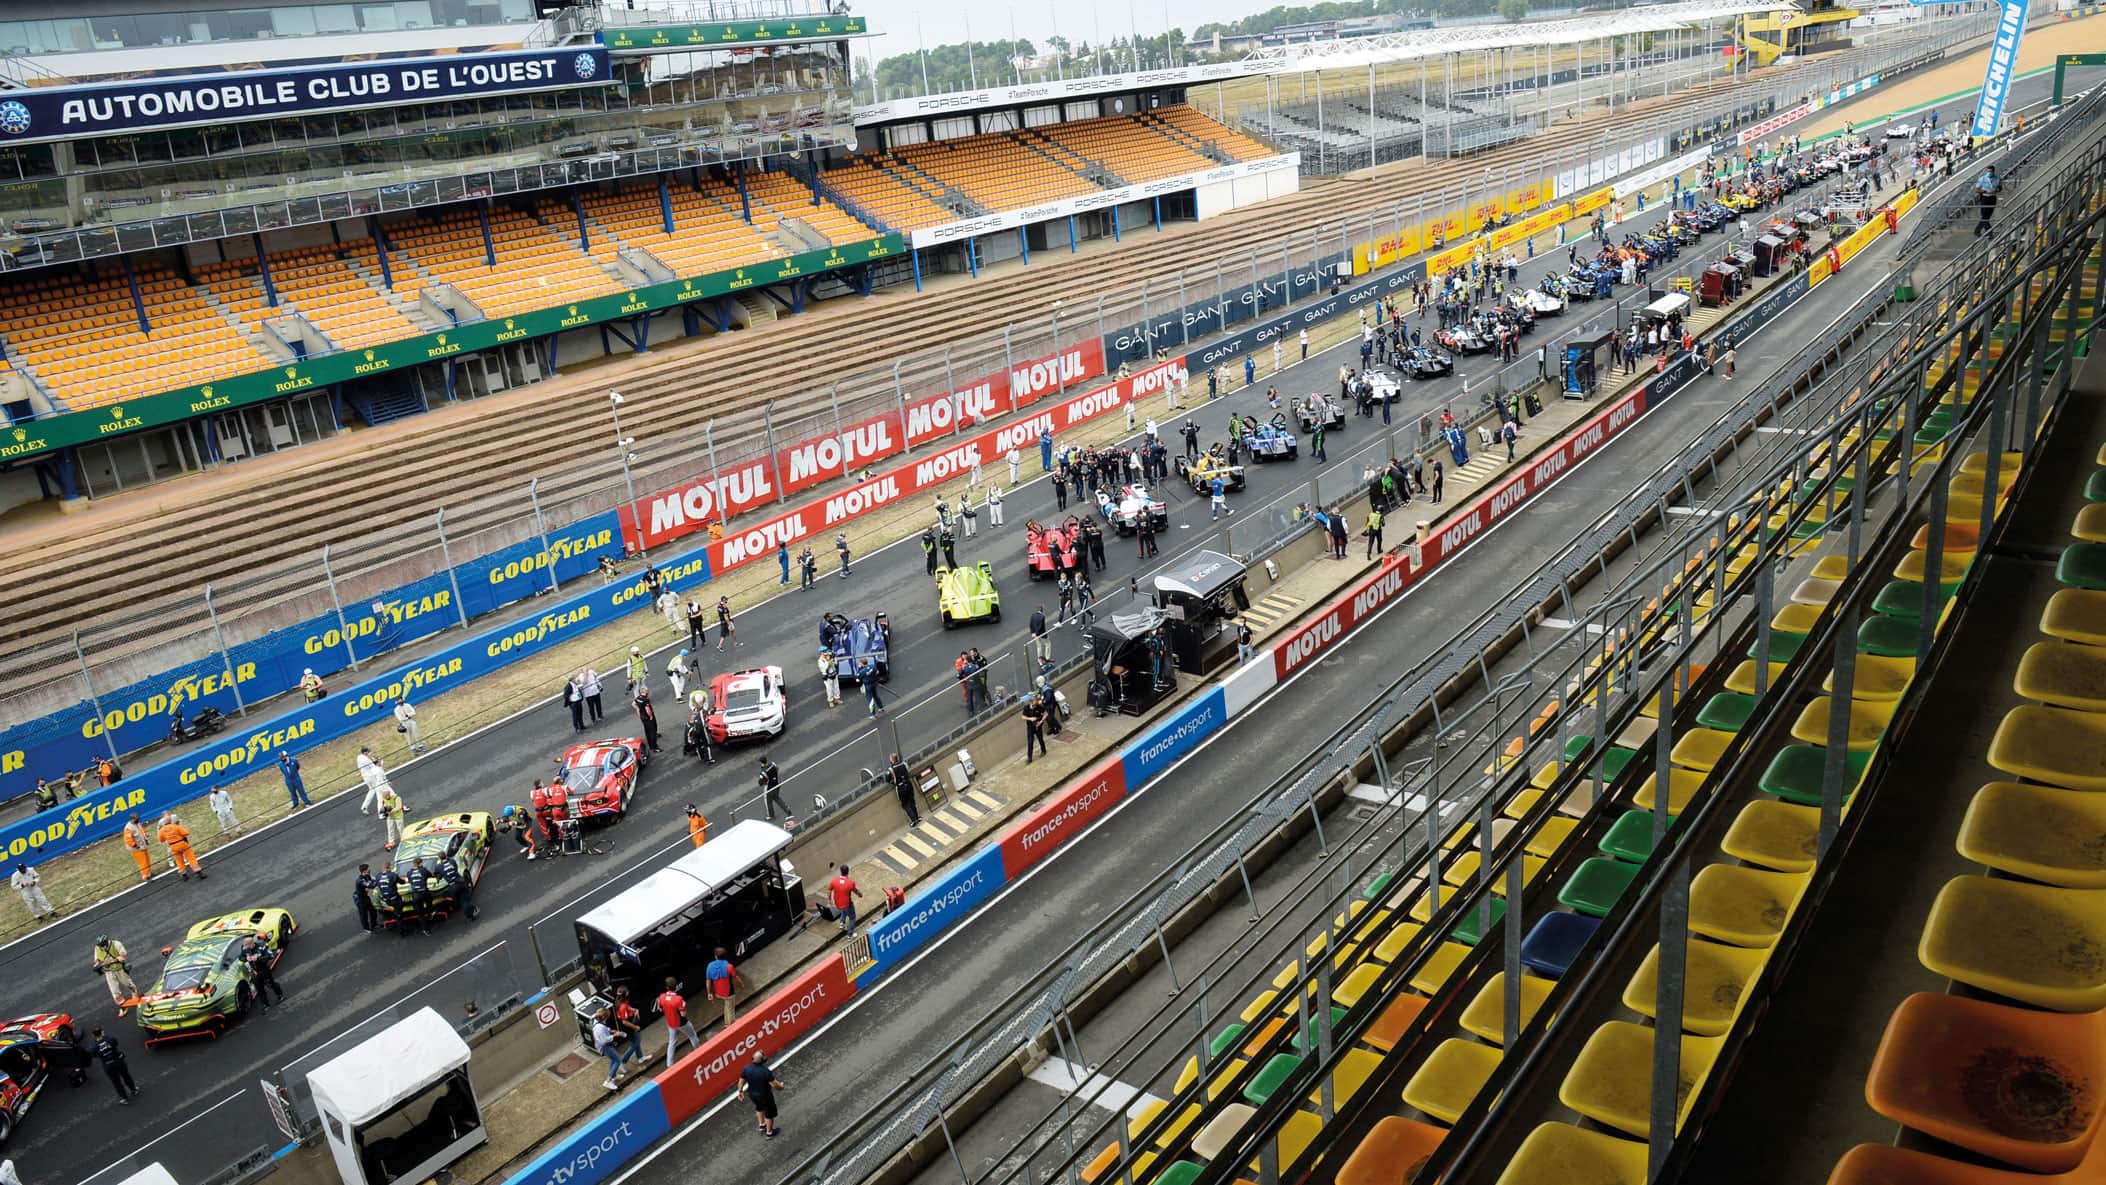 No crowd at Le Mans 2020